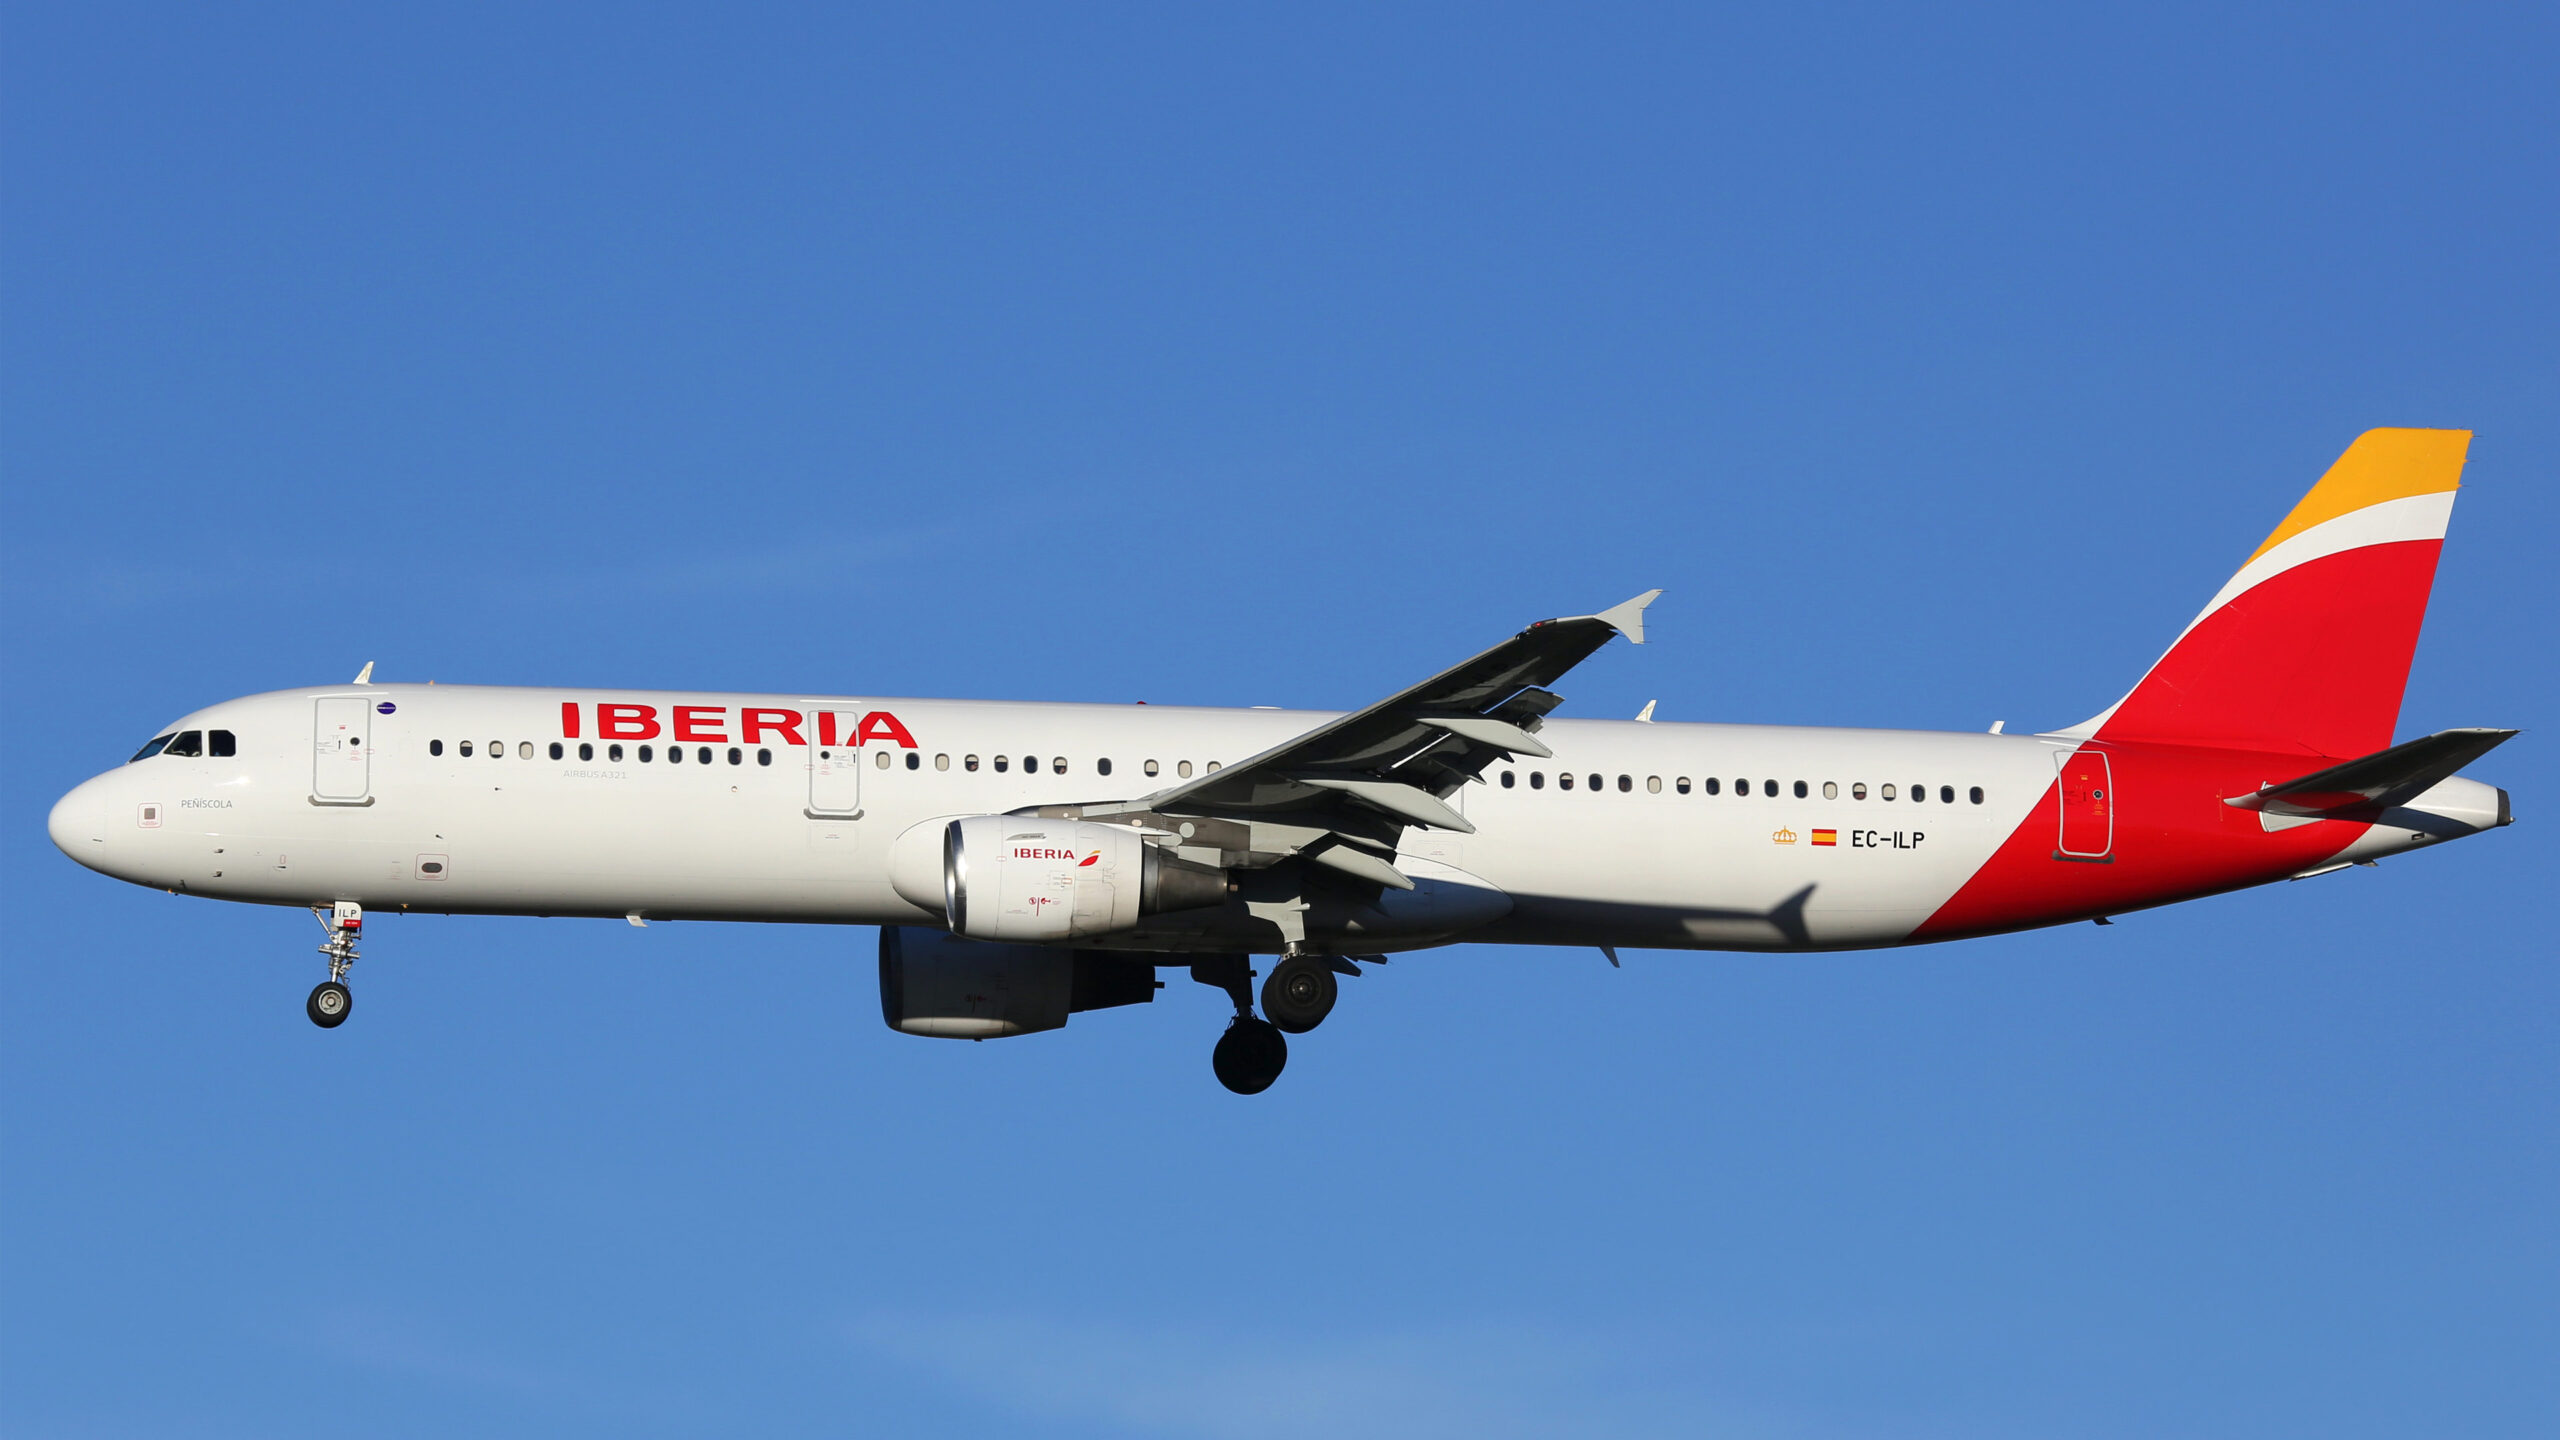 Las empresas que vuelen con Iberia podrán compensar sus emisiones